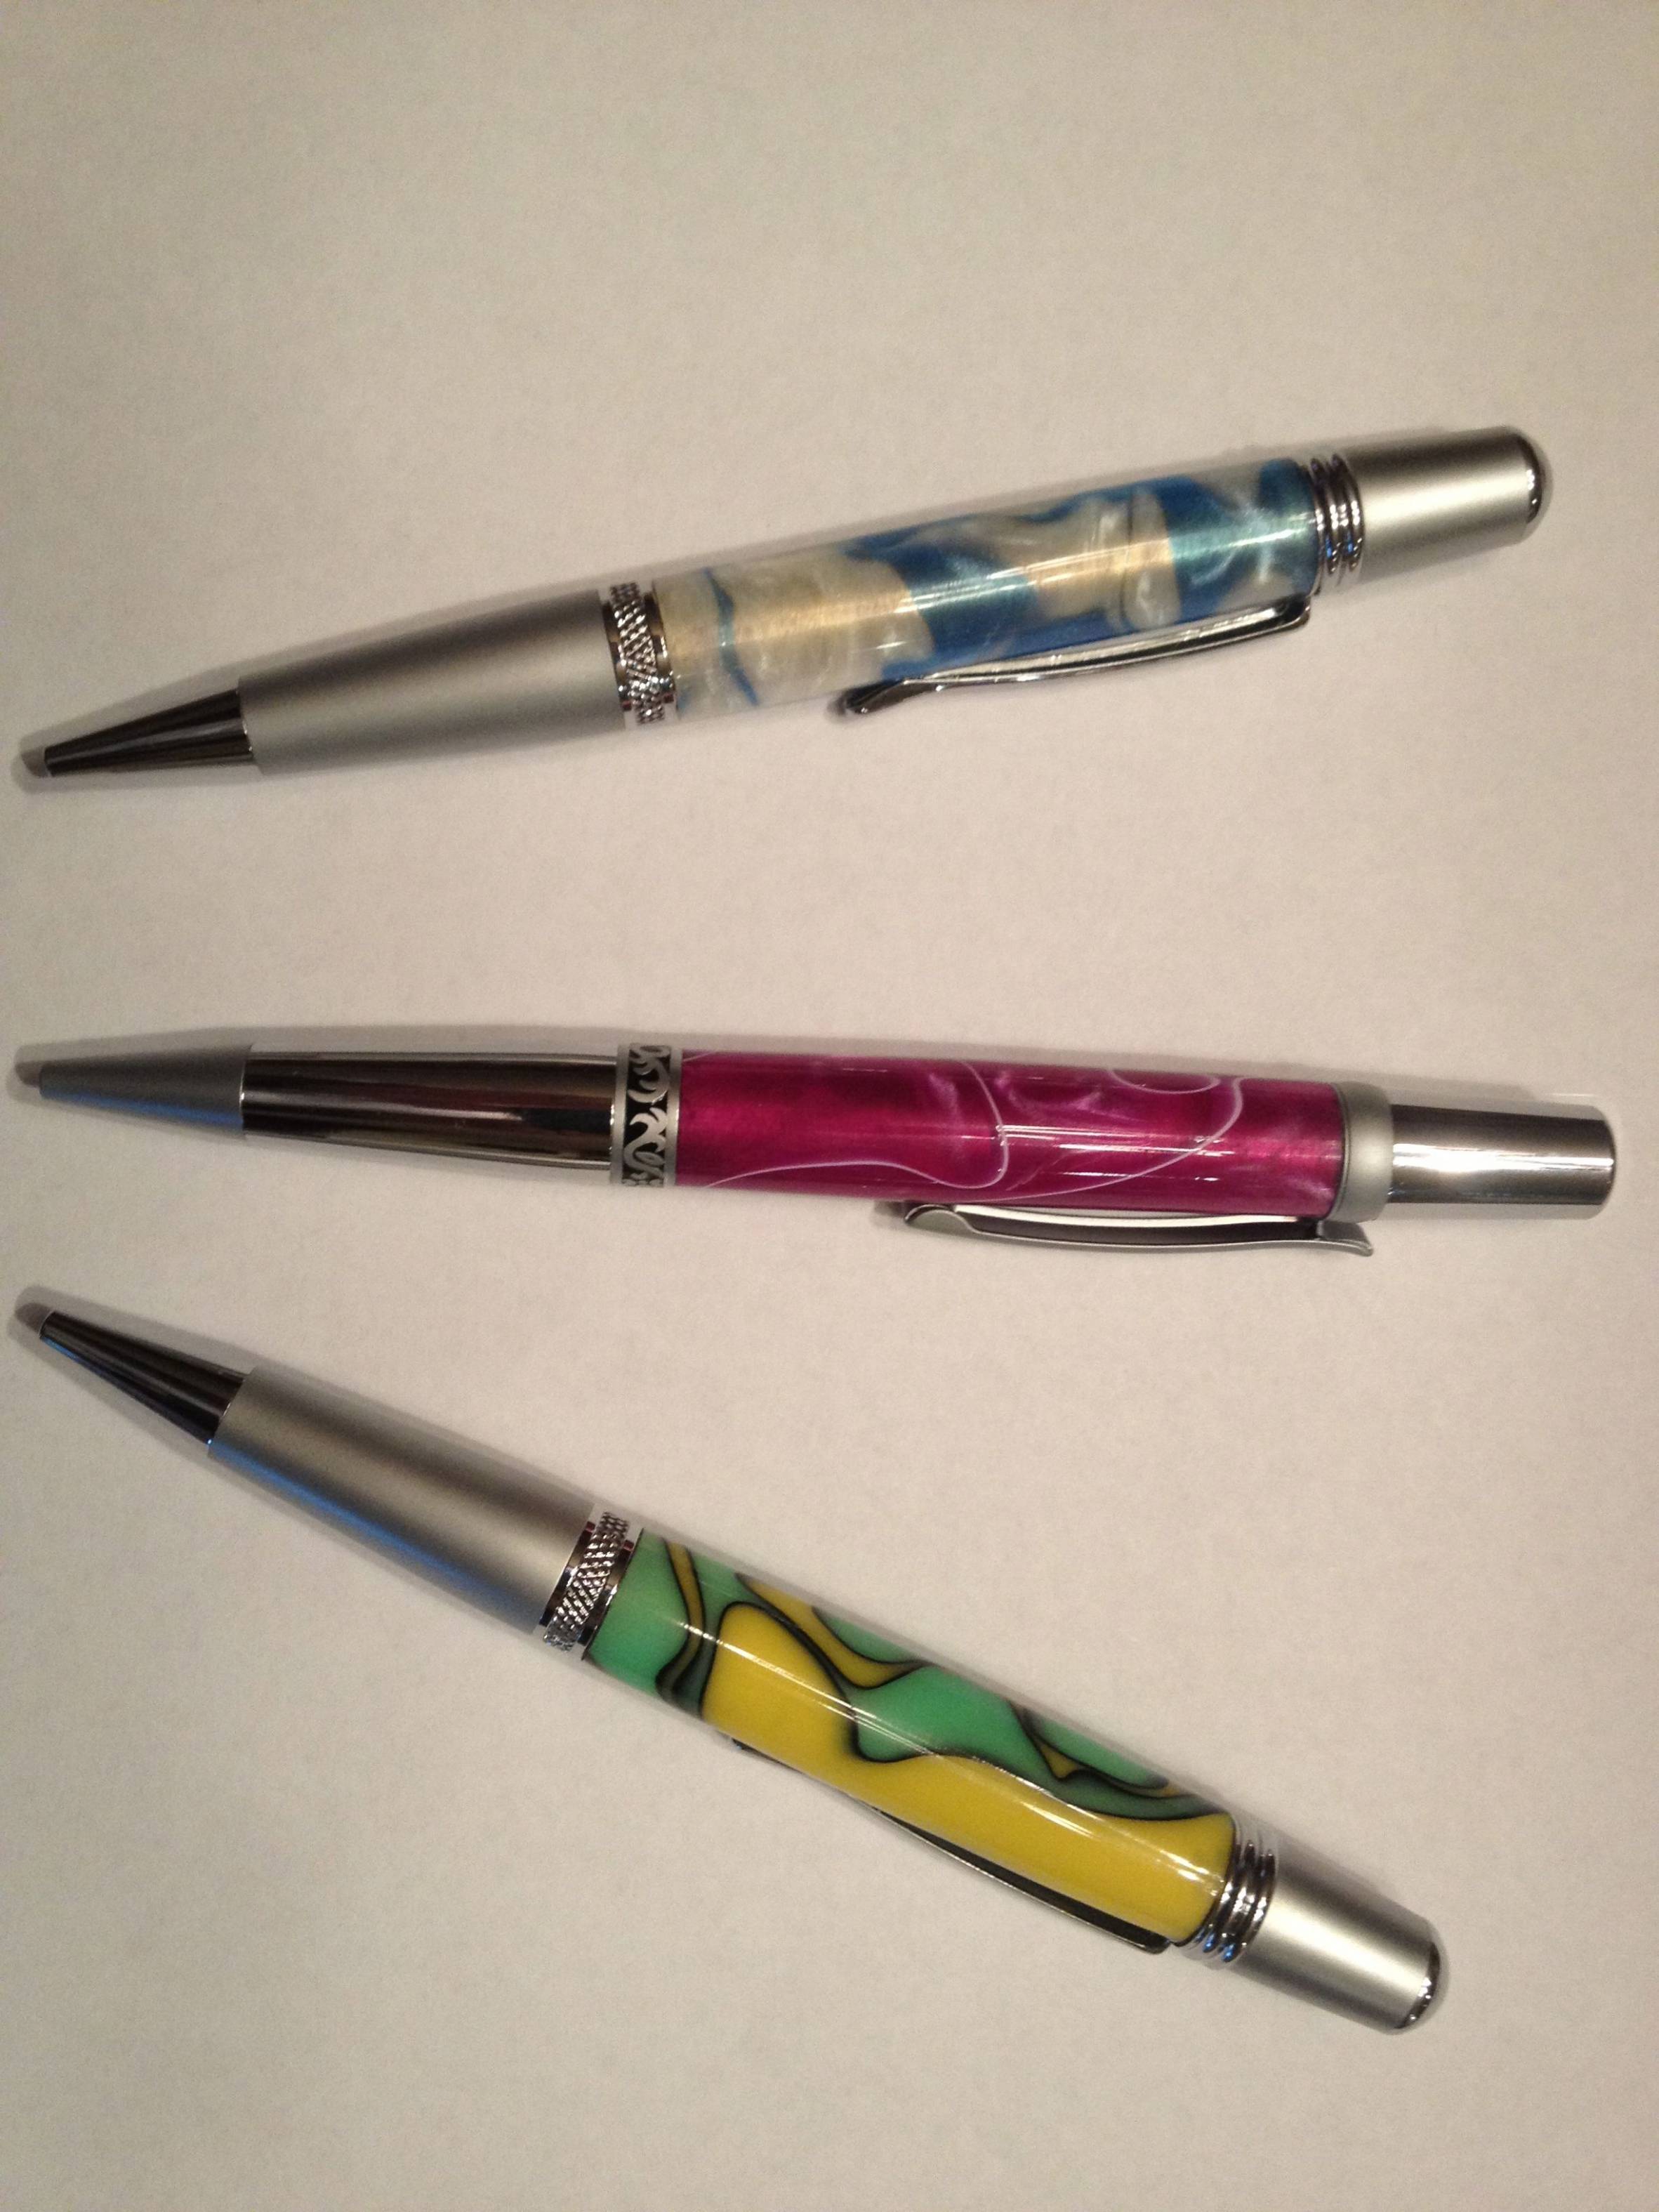 A few pens